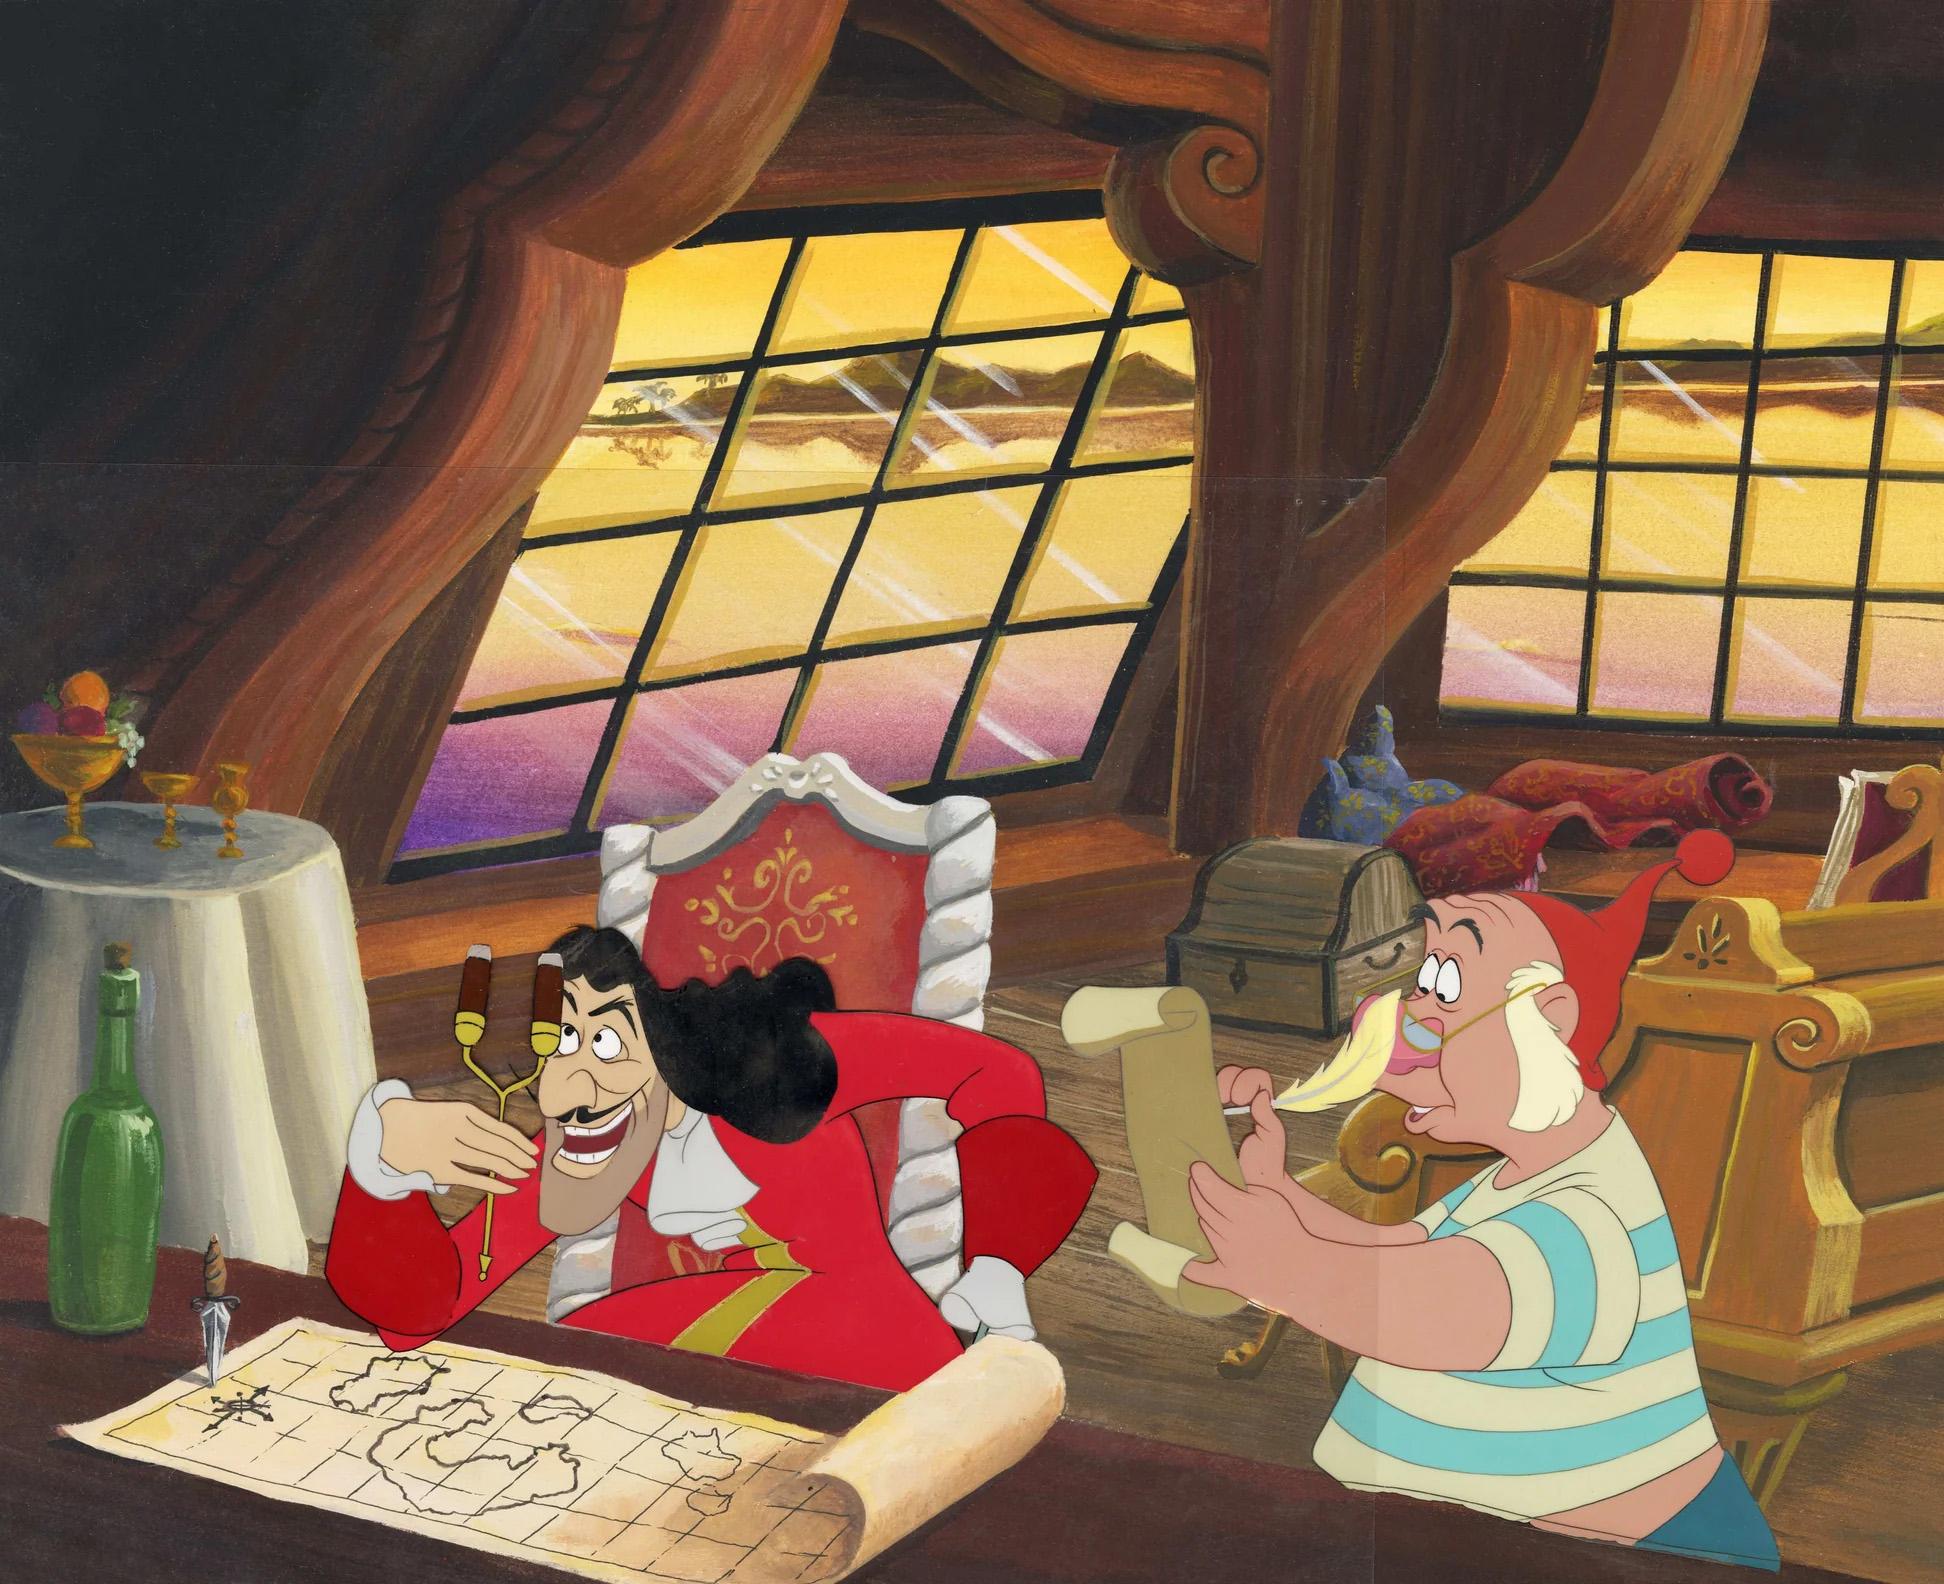 Original Production Cel: Haken und Smee von Peter Pan – Art von Walt Disney Studio Artists